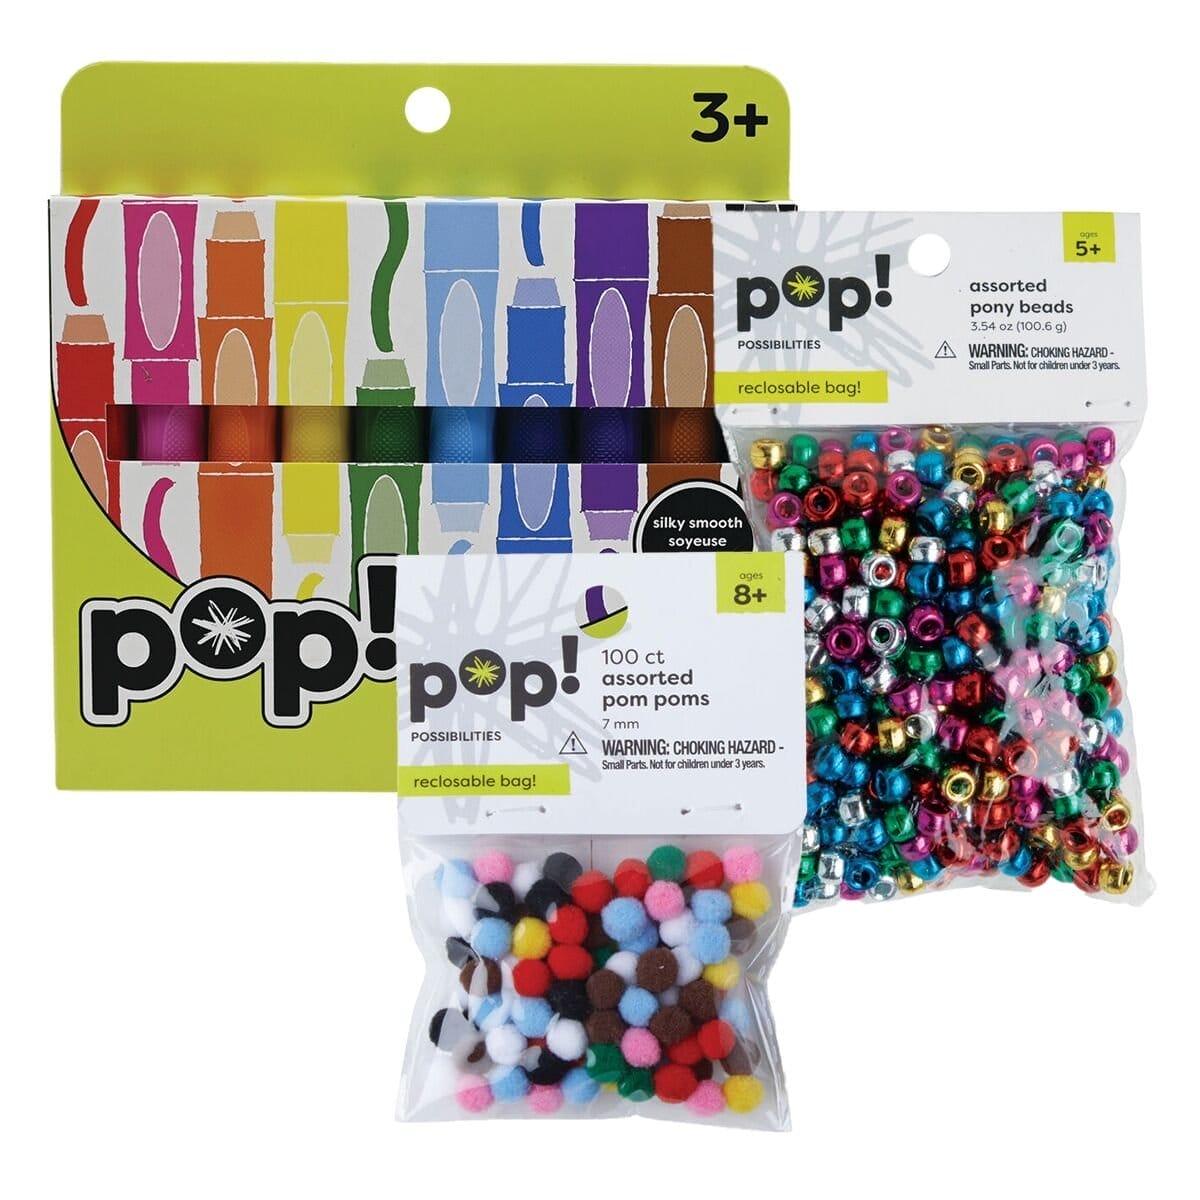 POP! Art Supplies and Activities